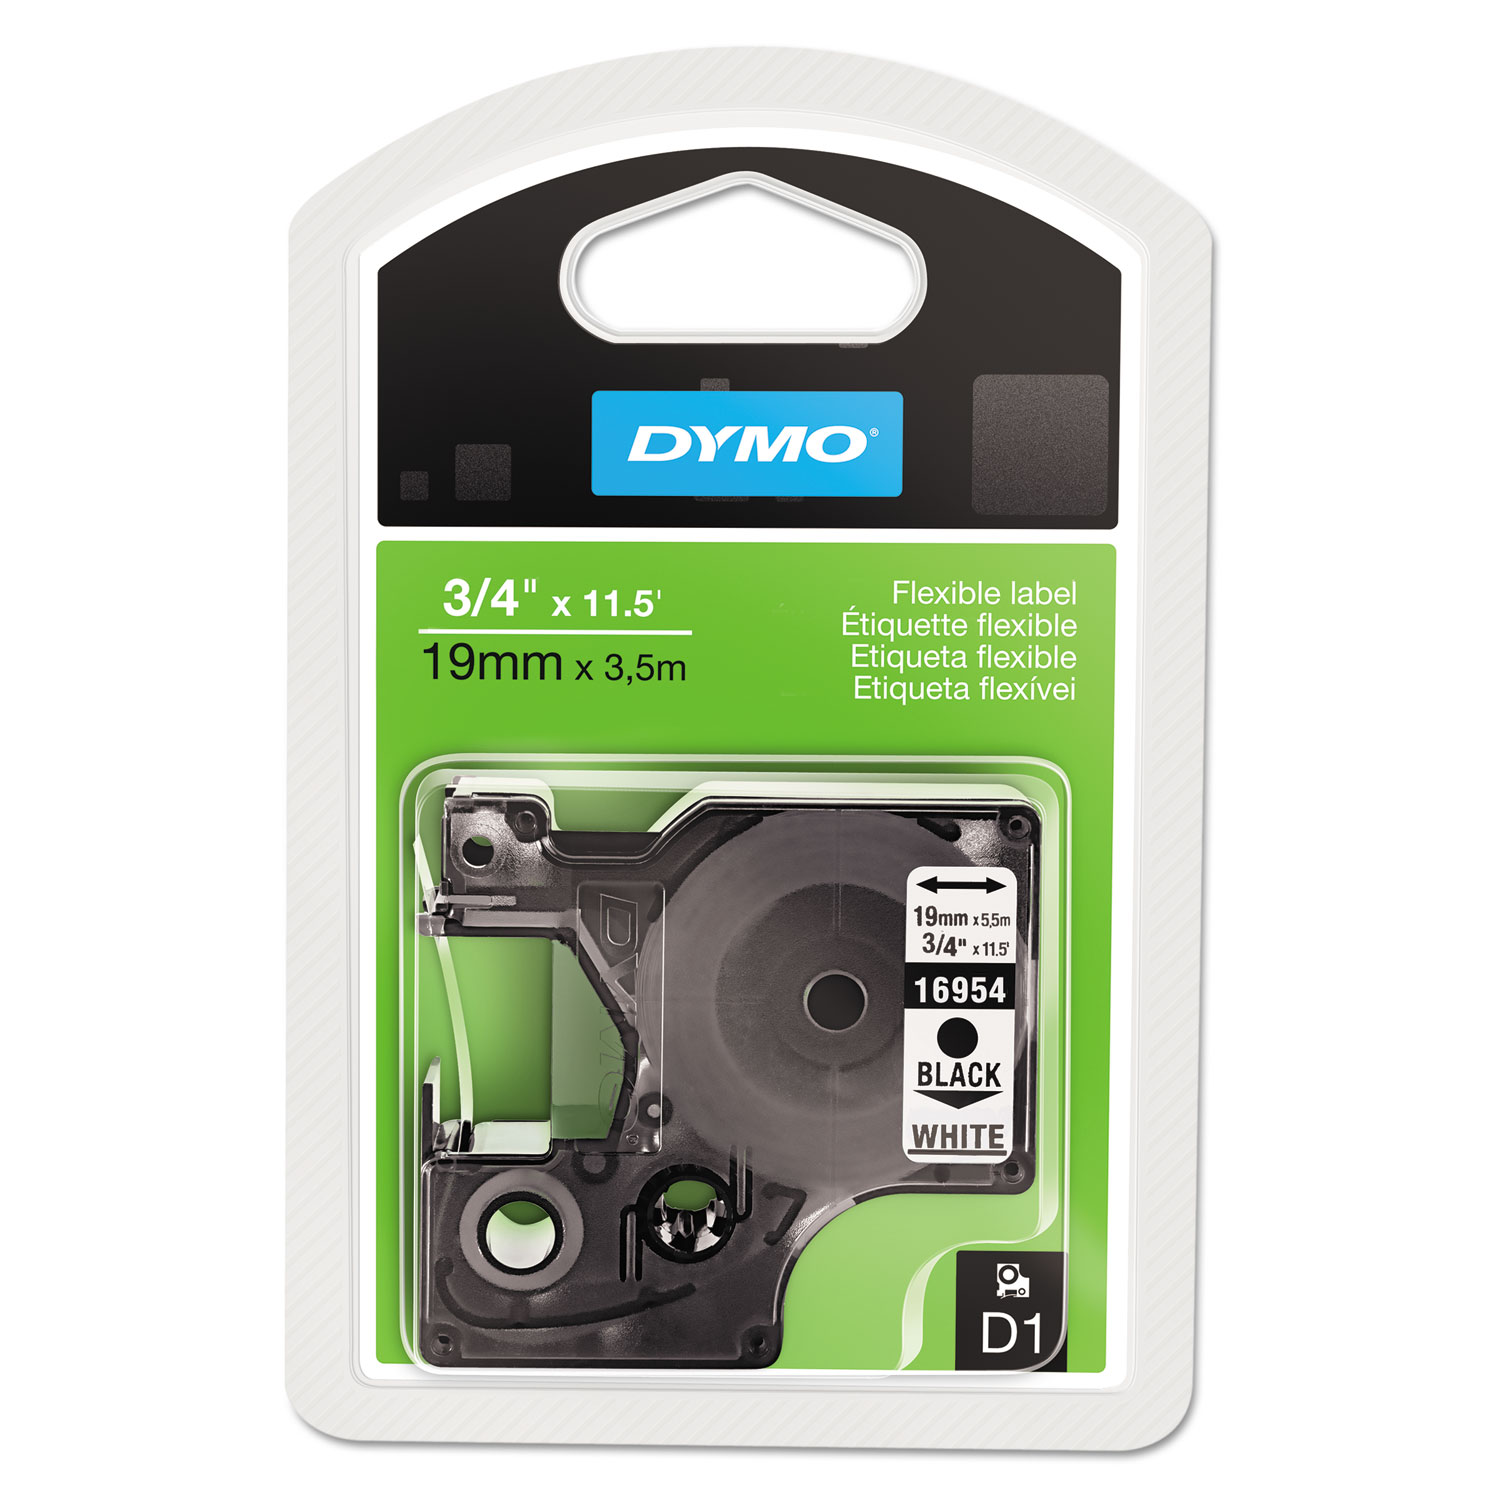  DYMO 16954 D1 Flexible Nylon Label Maker Tape, 0.75 x 11.5 ft, Black on White (DYM16954) 